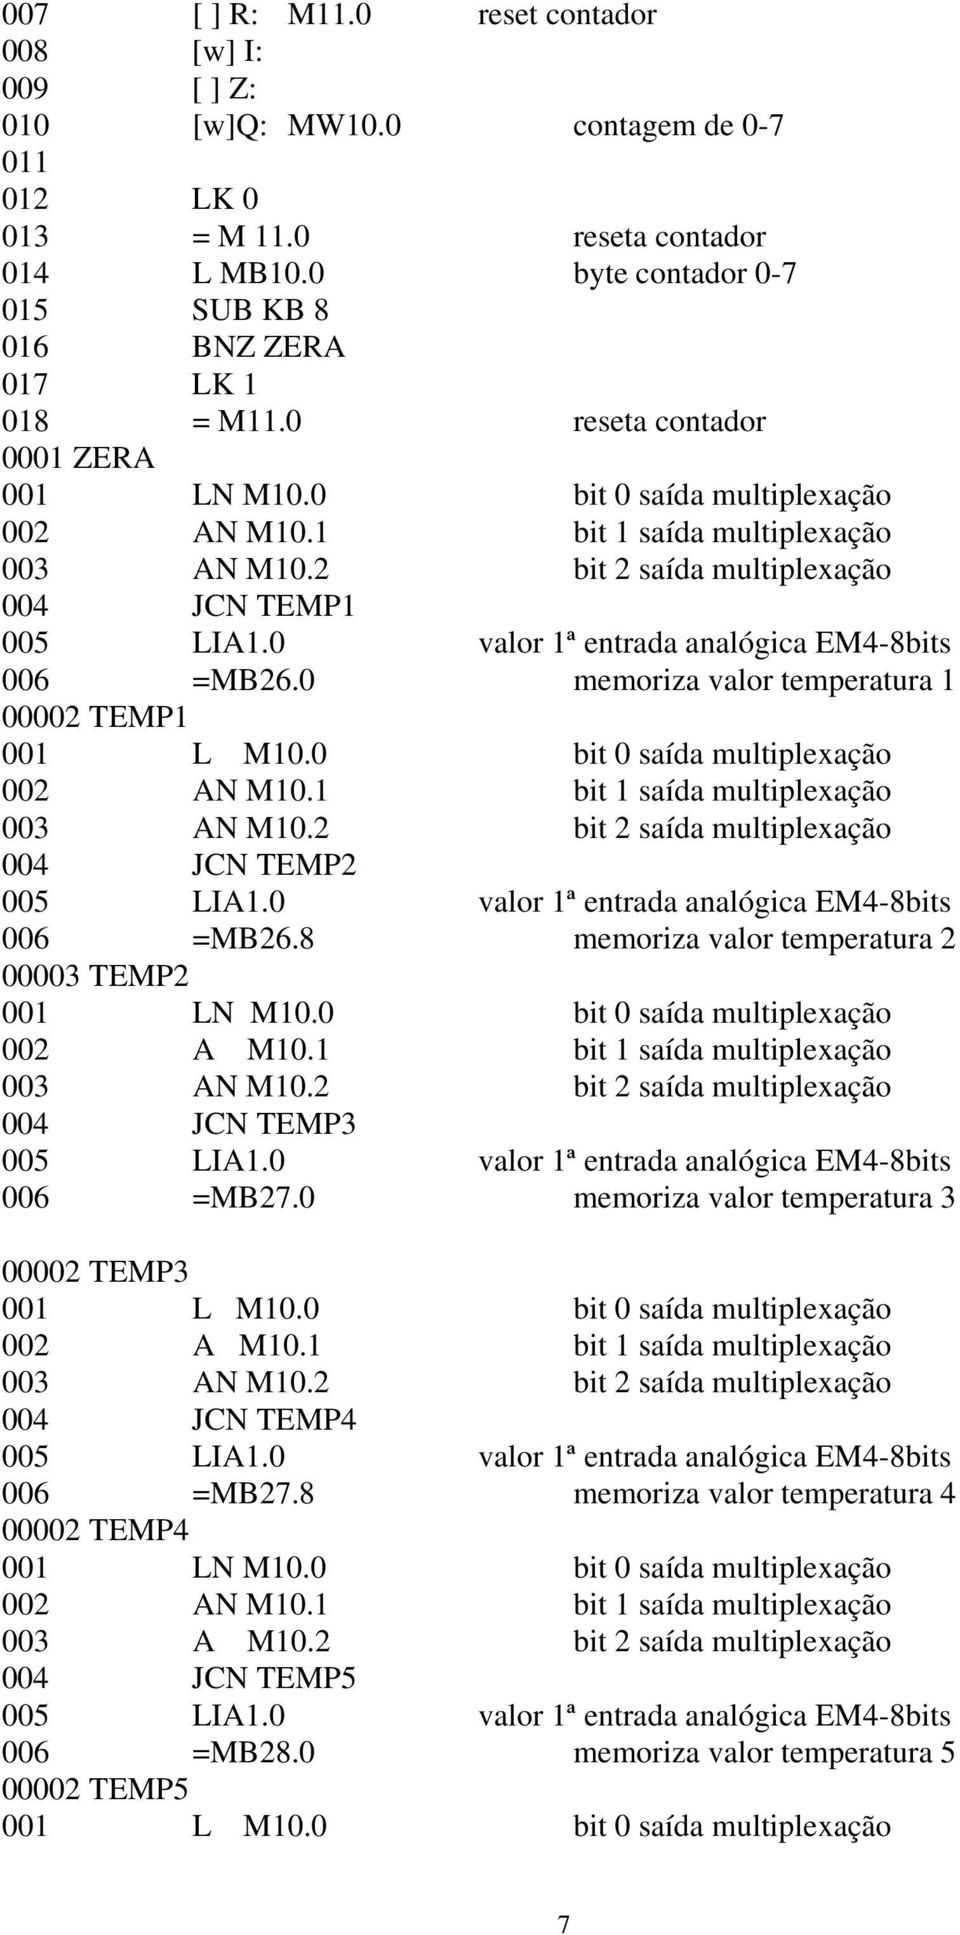 2 bit 2 saída multiplexação 004 JCN TEMP1 006 =MB26.0 memoriza valor temperatura 1 00002 TEMP1 001 L M10.0 bit 0 saída multiplexação 002 AN M10.1 bit 1 saída multiplexação 003 AN M10.